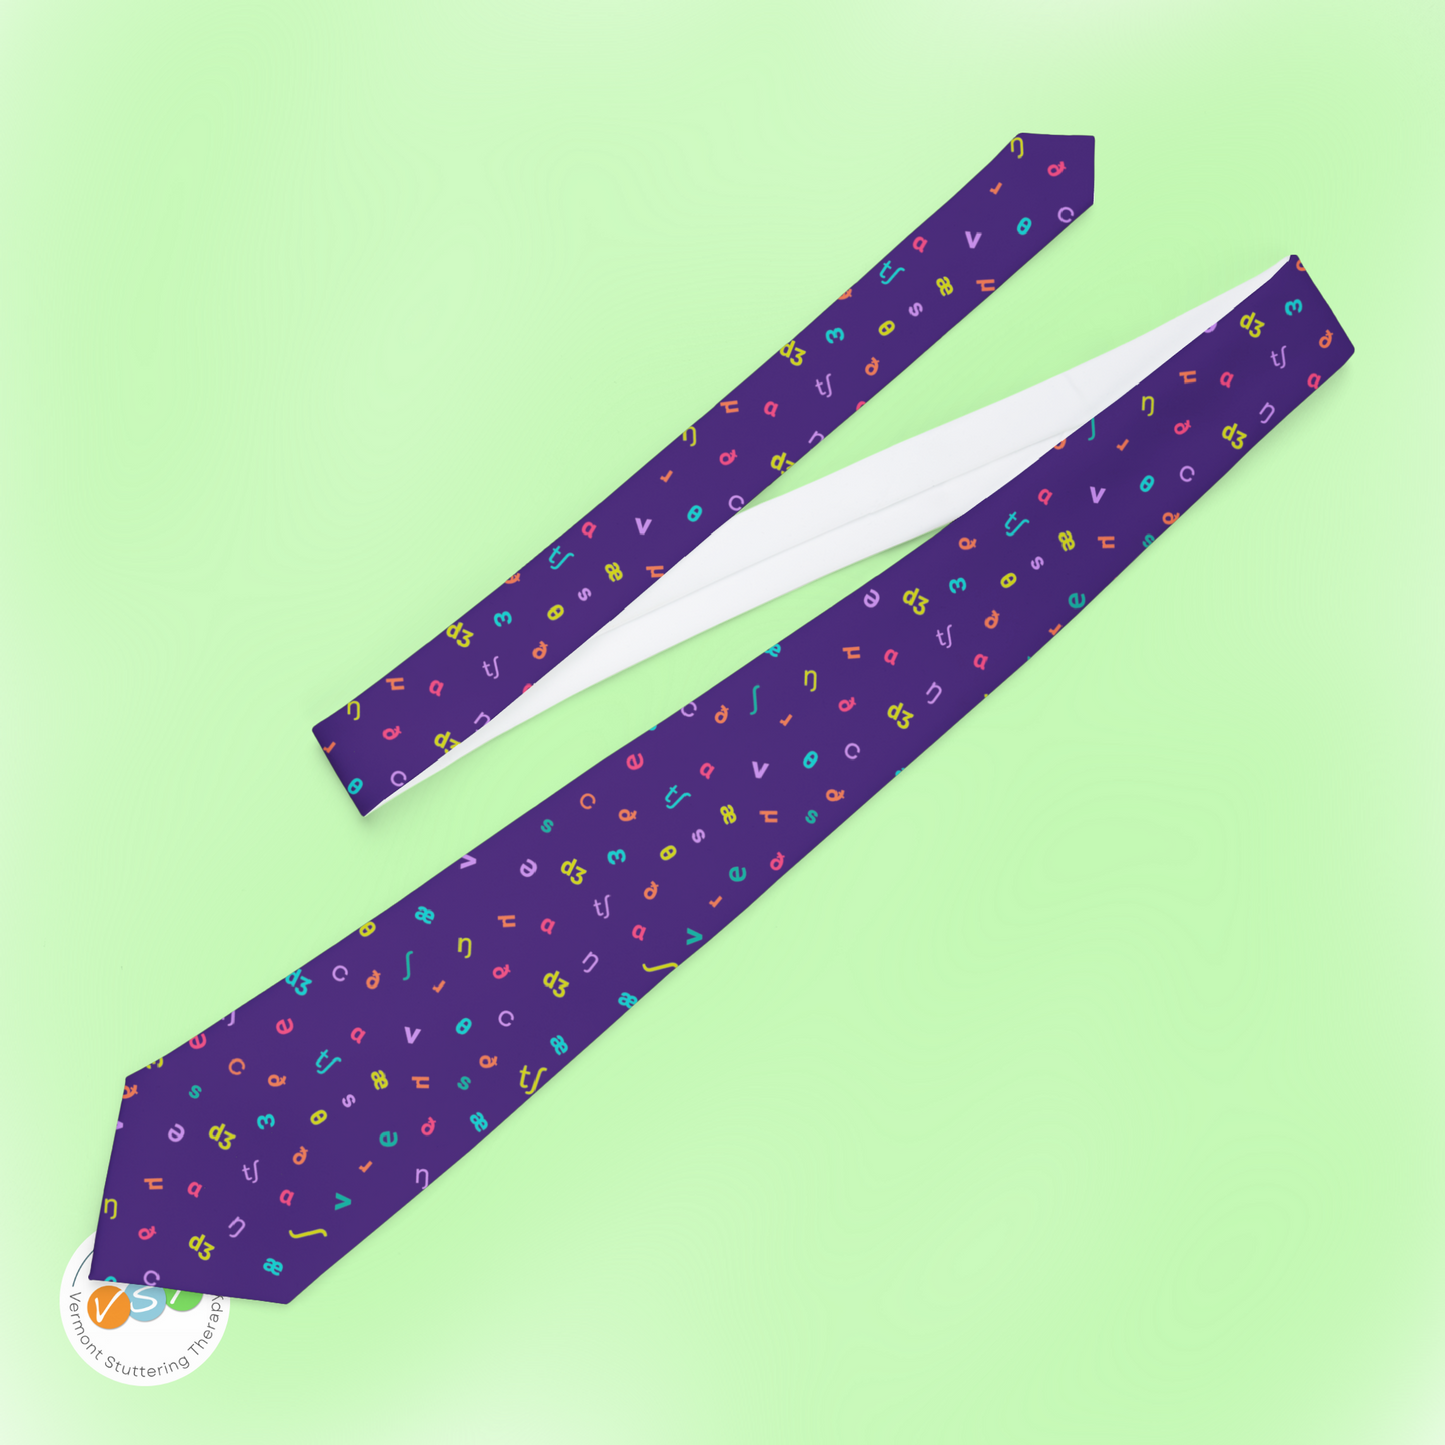 IPA Phonetic Symbol Men's Necktie